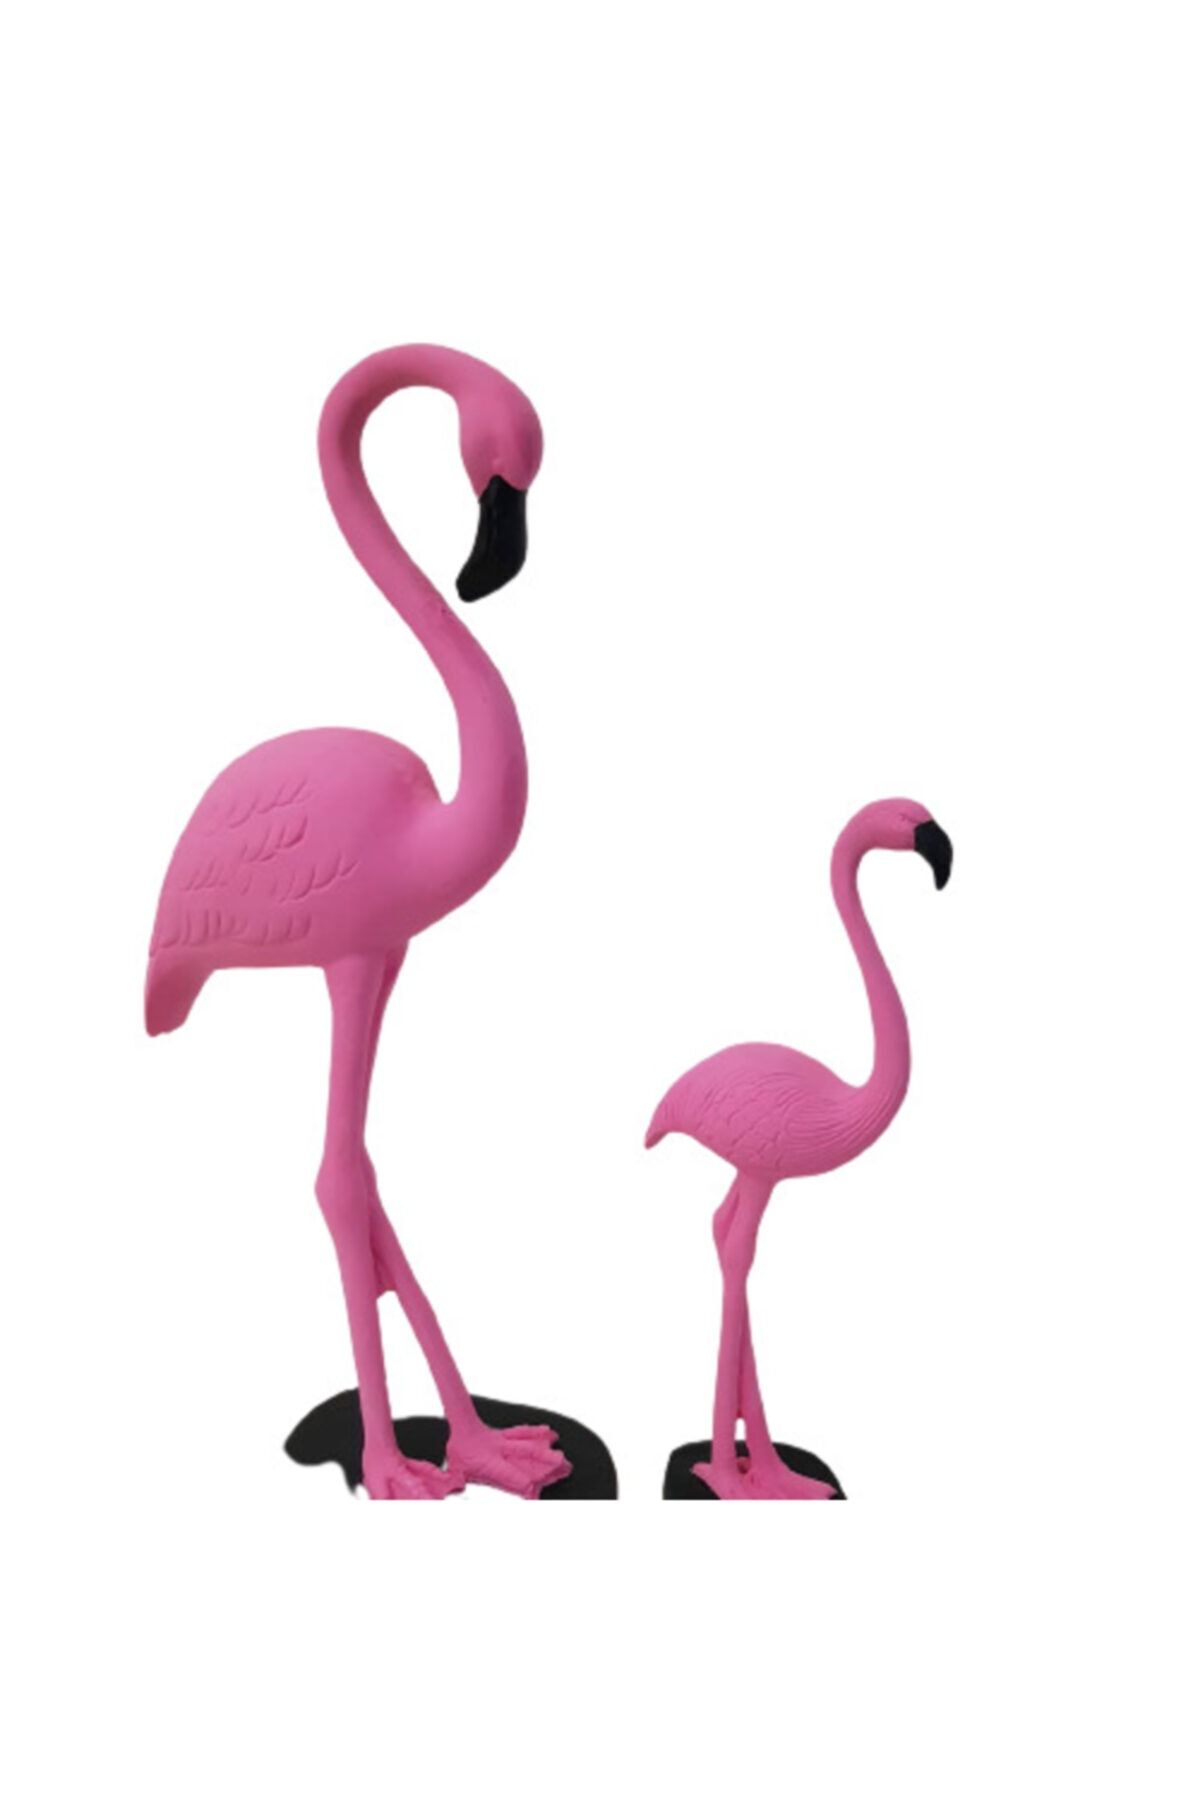 Arose Pembe Ab Ev Ikili Flamingo Dekorasyon